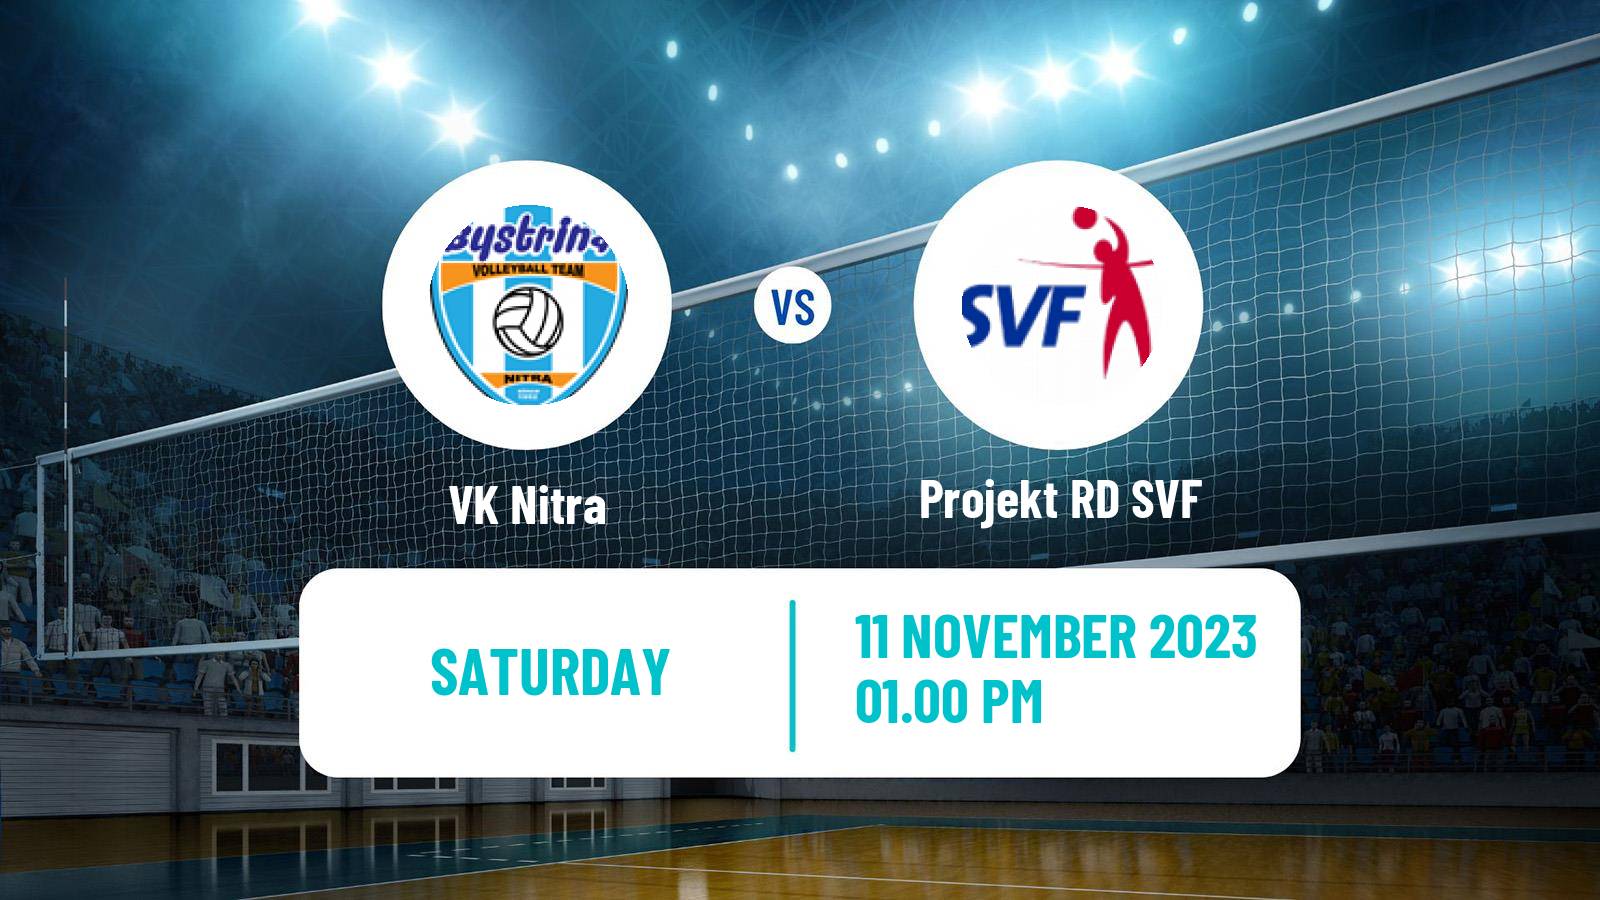 Volleyball Slovak Extraliga Volleyball Nitra - Projekt RD SVF